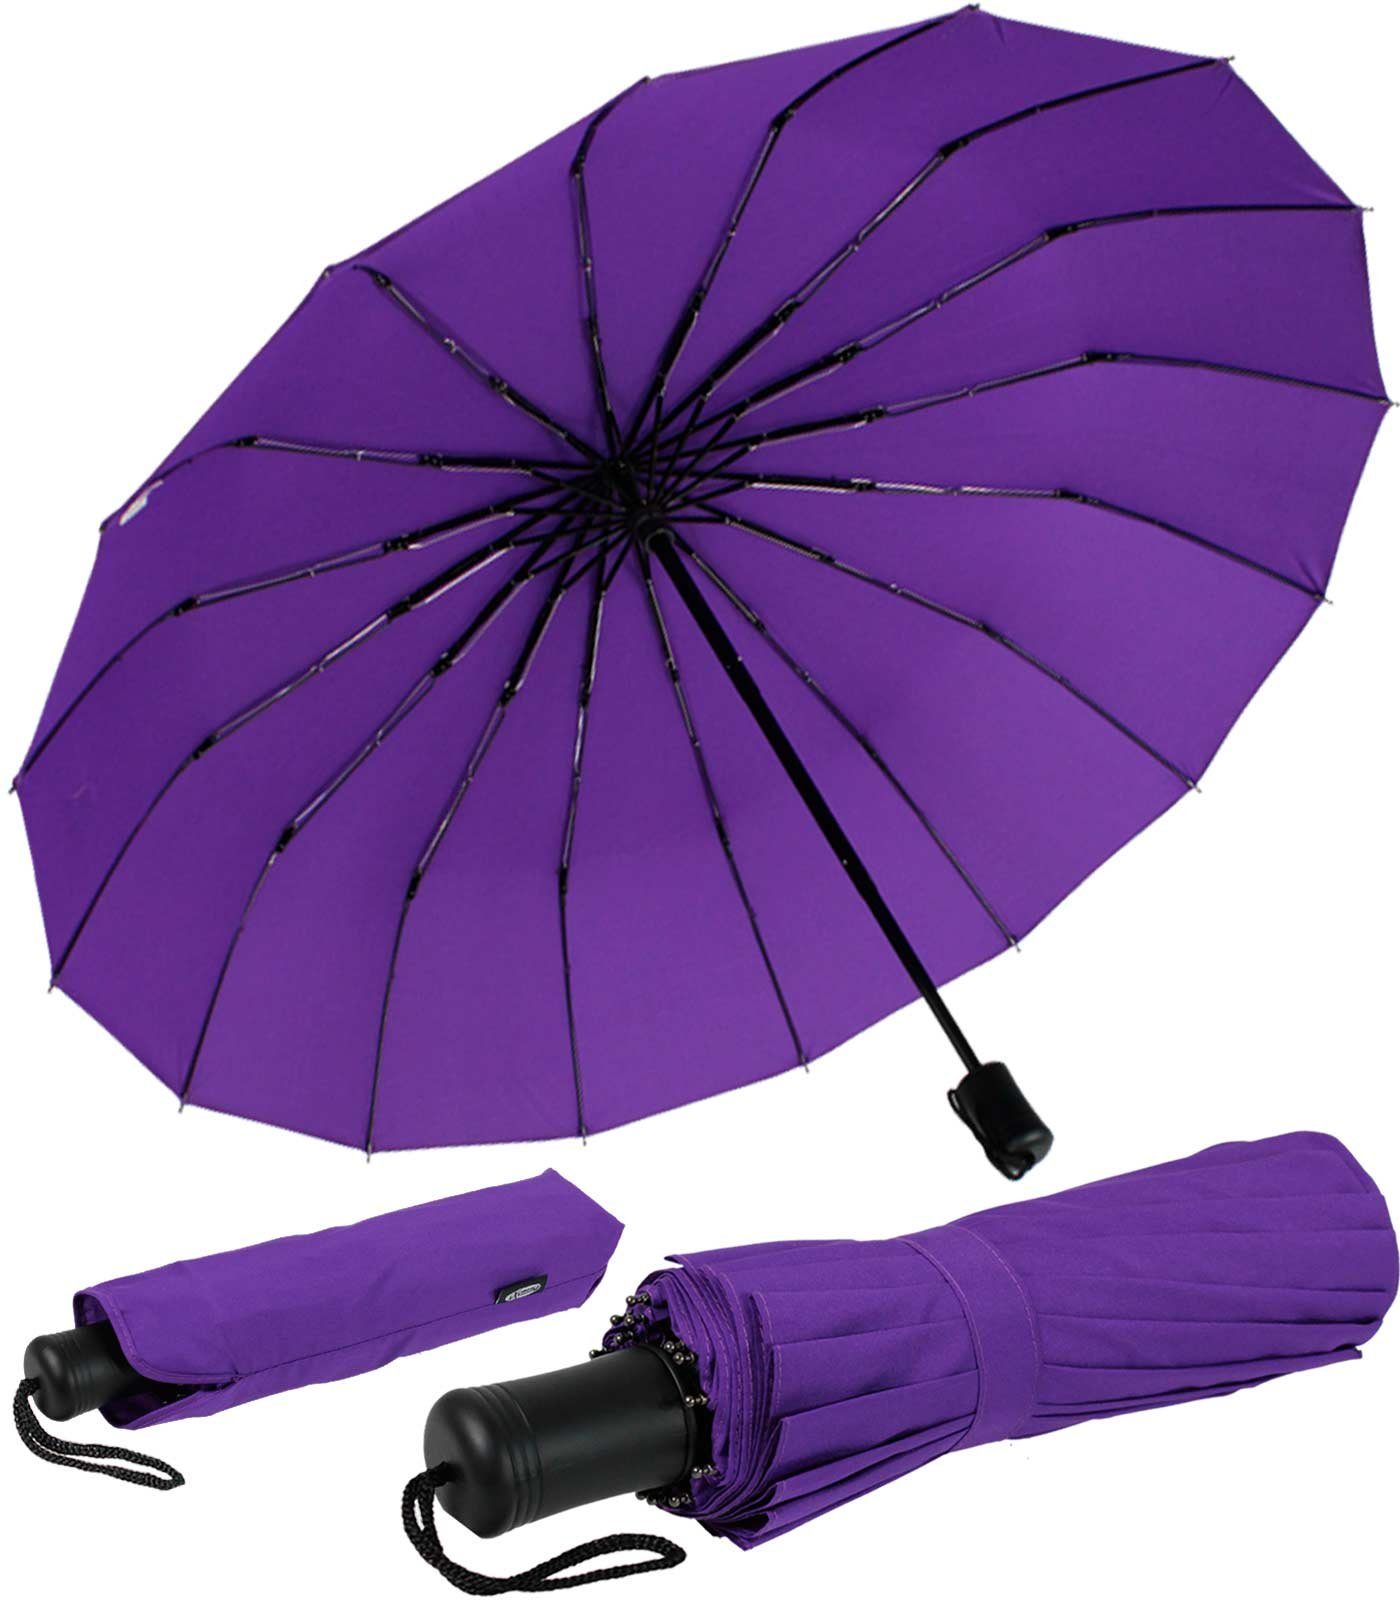 iX-brella Taschenregenschirm Mini mit 16 Streben extra stabil und farbenfroh, farbenfroh lila